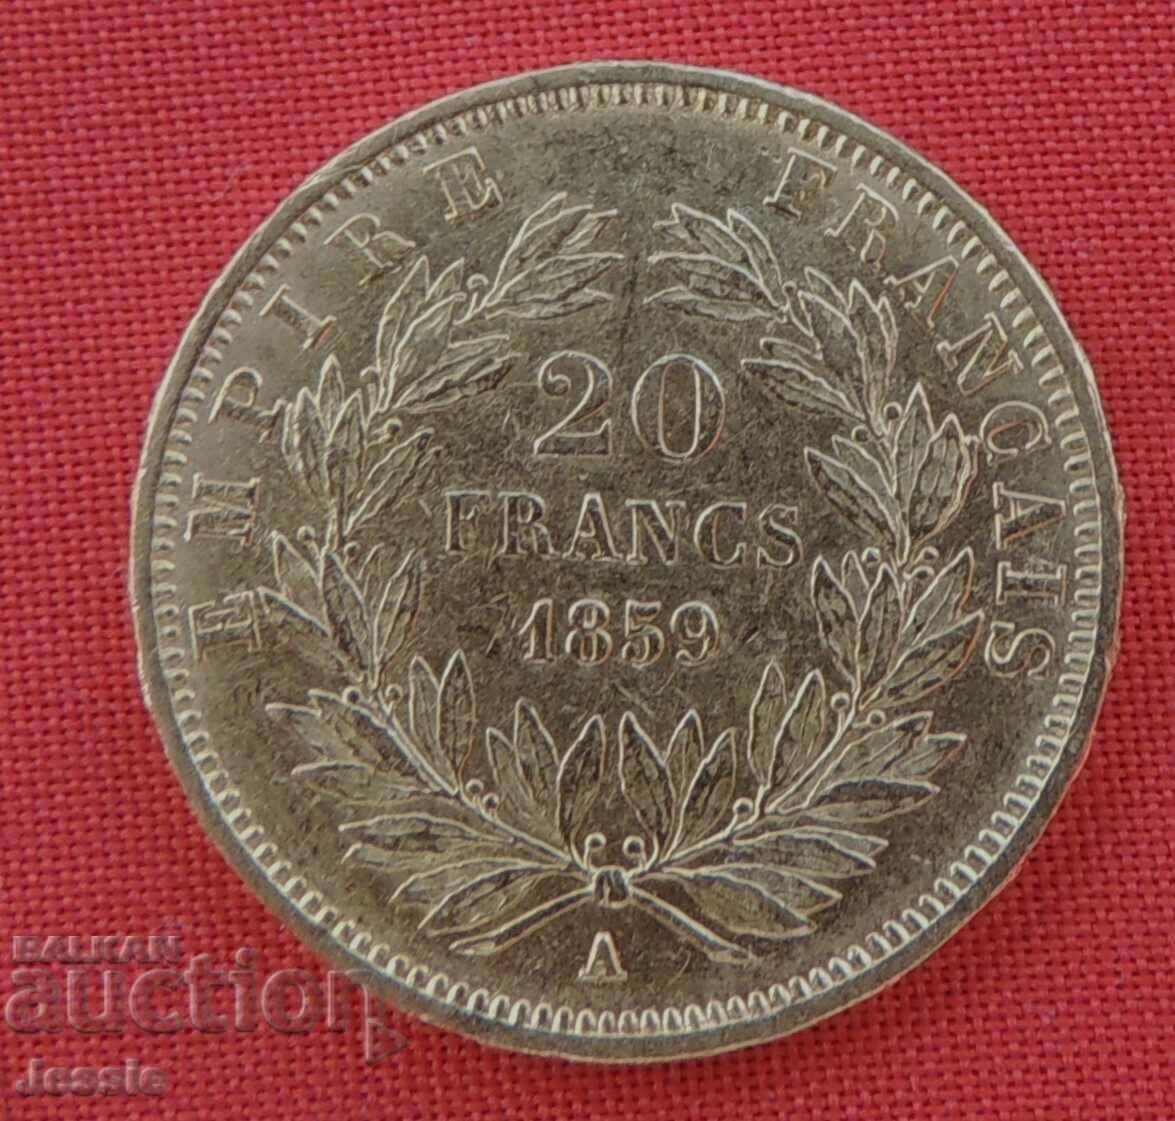 20 Francs 1859 France ( 20 francs France ) (gold)